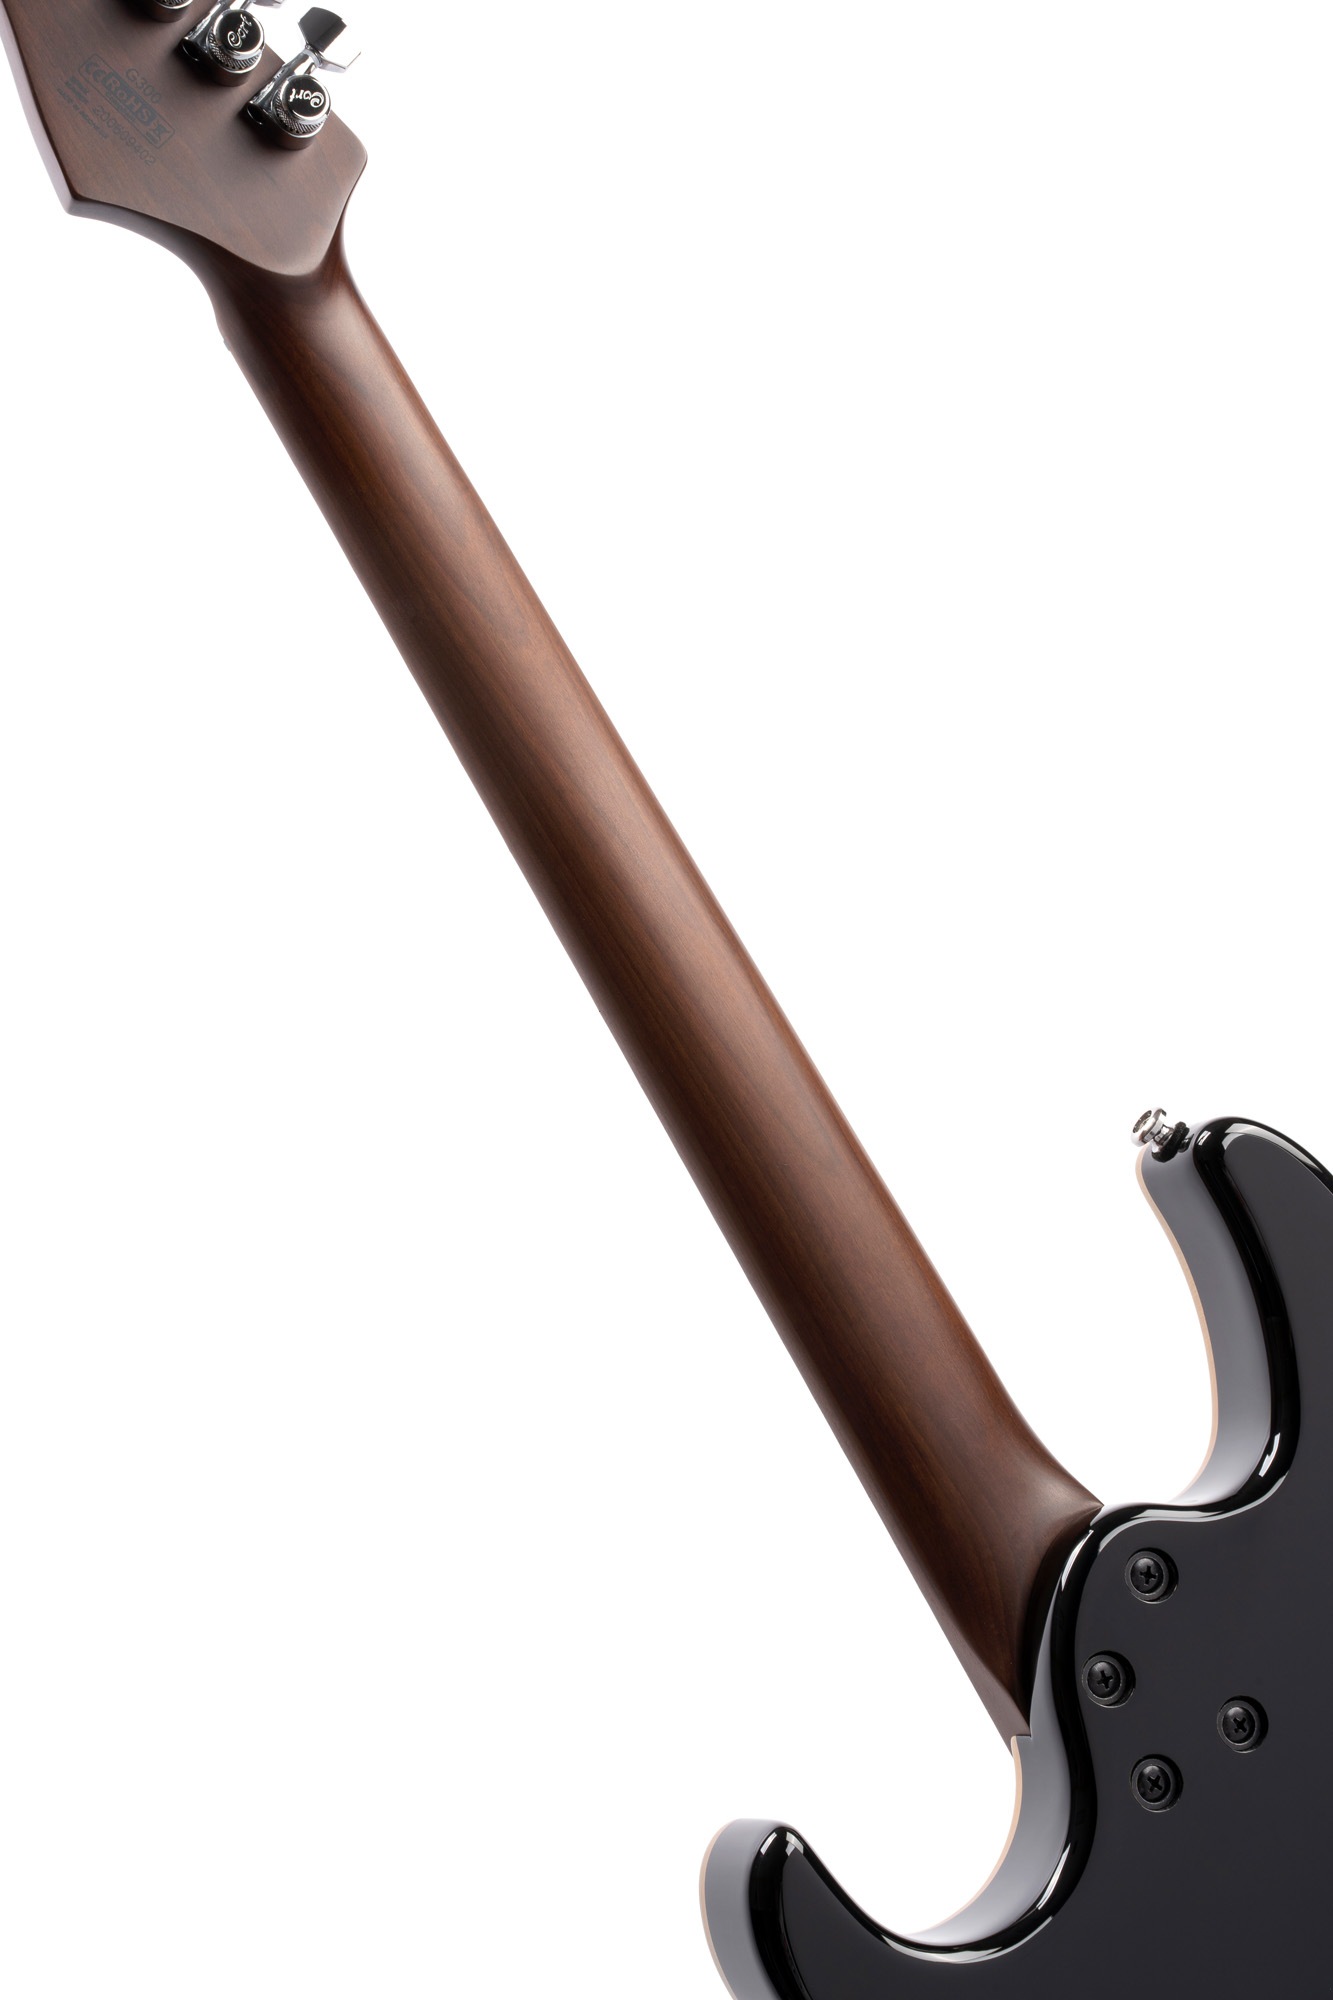 Cort G300 Pro Hh Trem Mn - Black - Str shape electric guitar - Variation 2